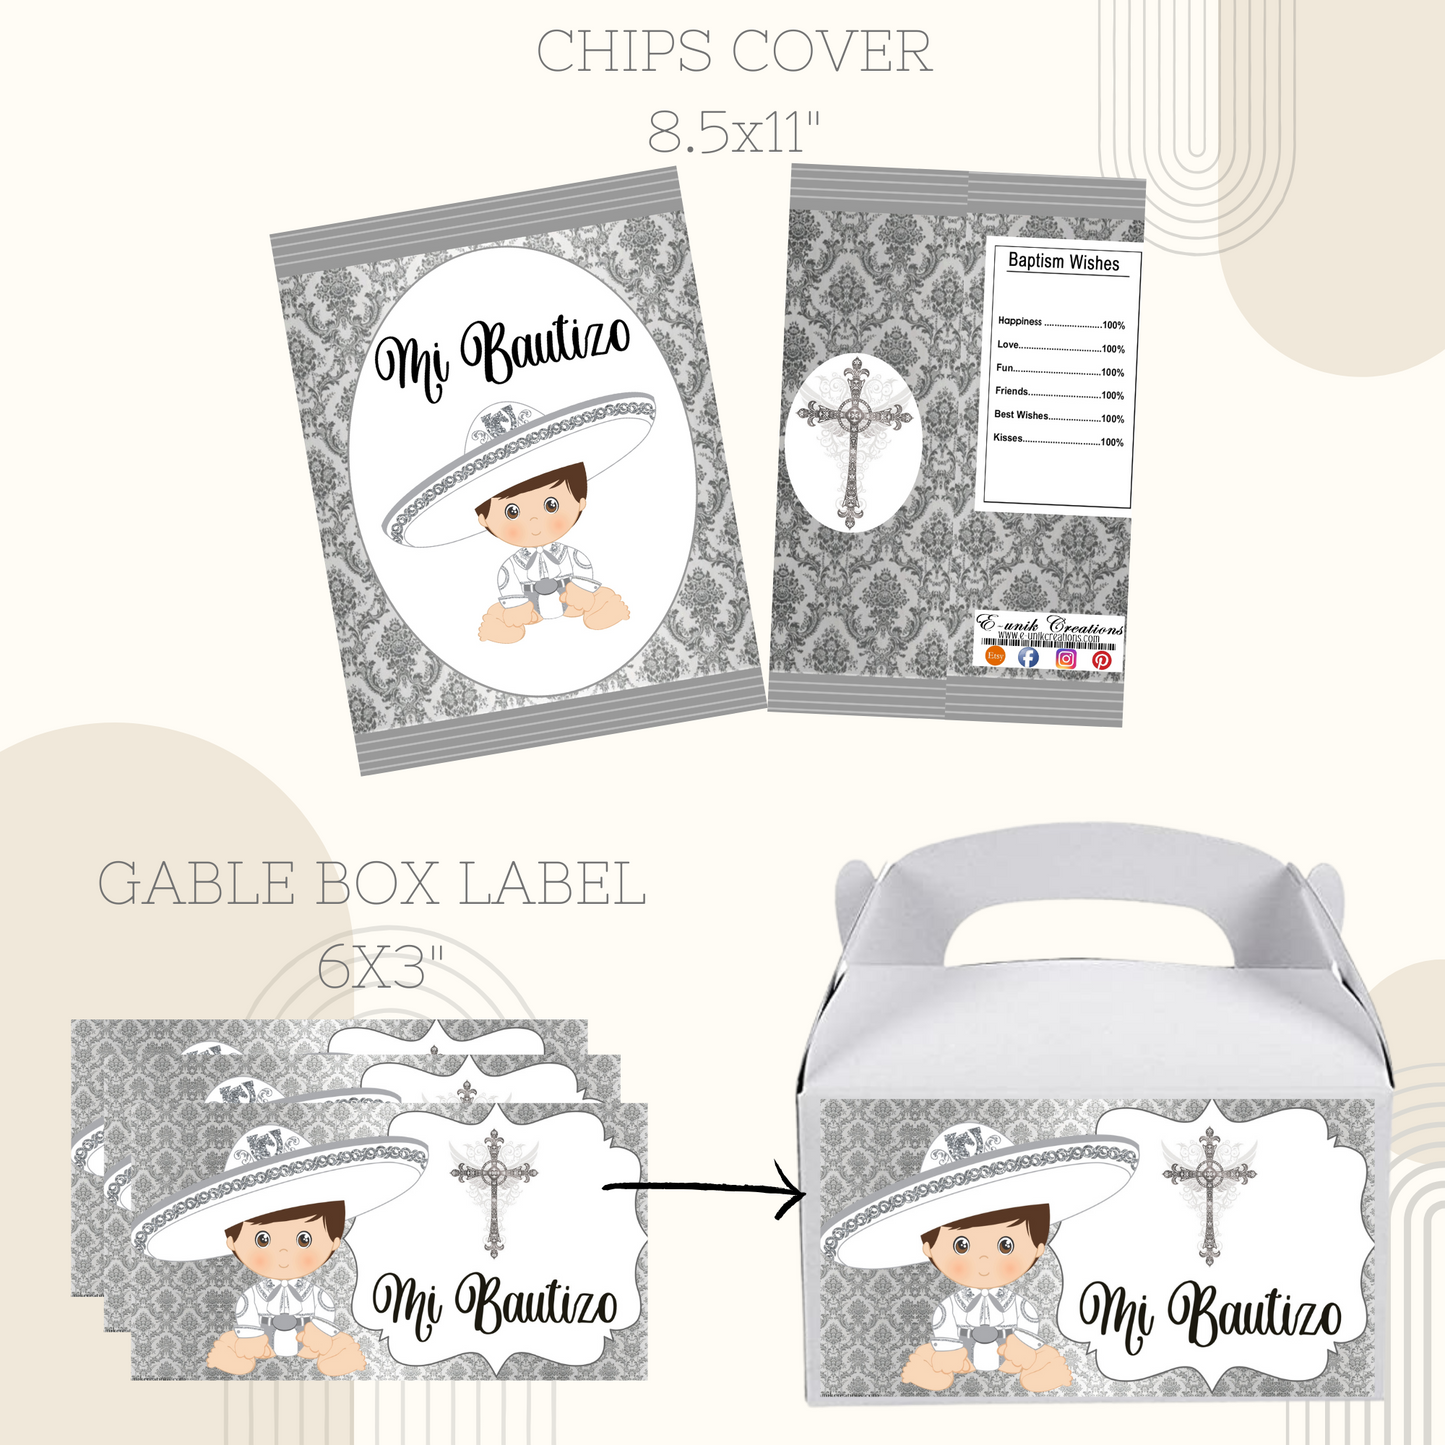 Silver Baby Charrito Baptism Printable Kit